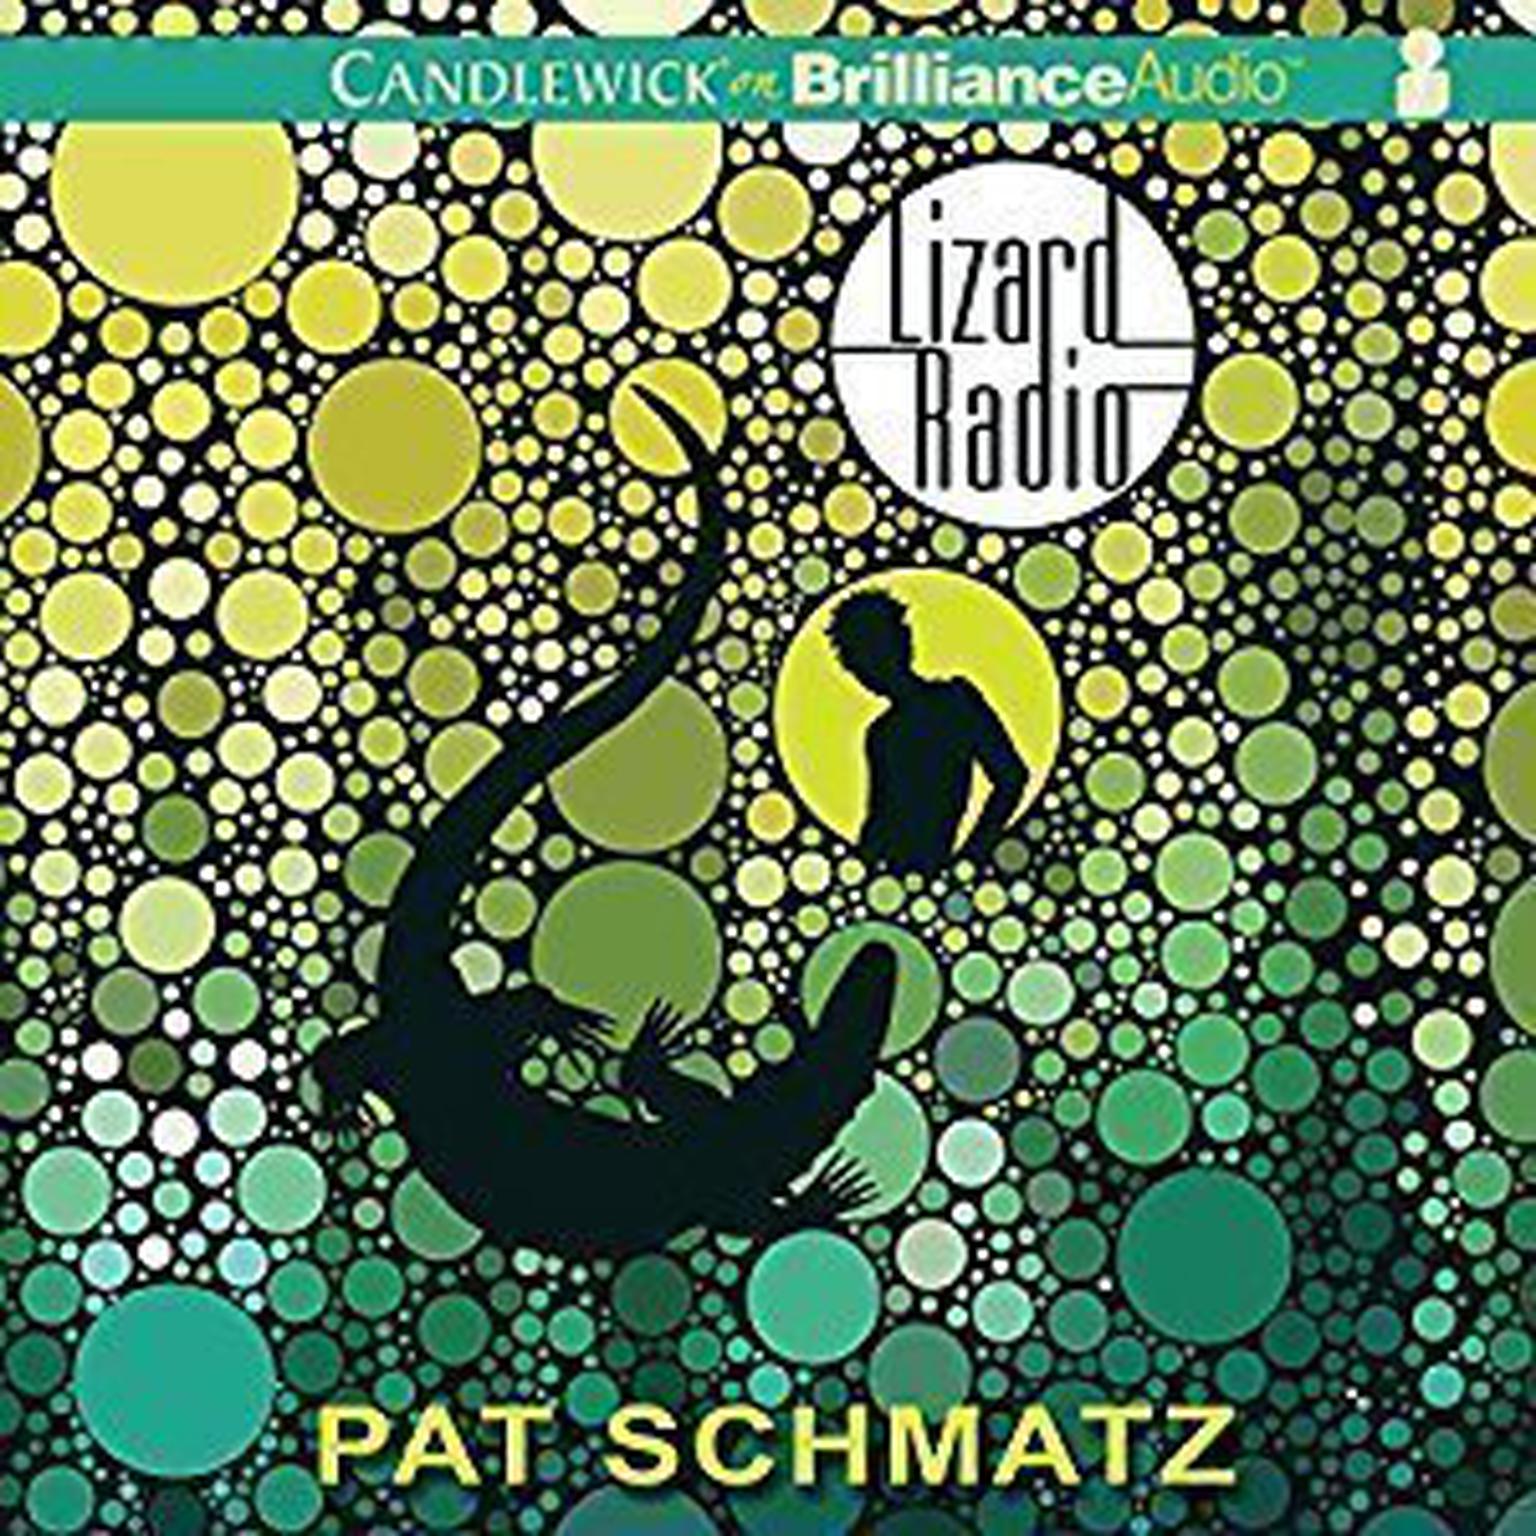 Lizard Radio Audiobook, by Pat Schmatz